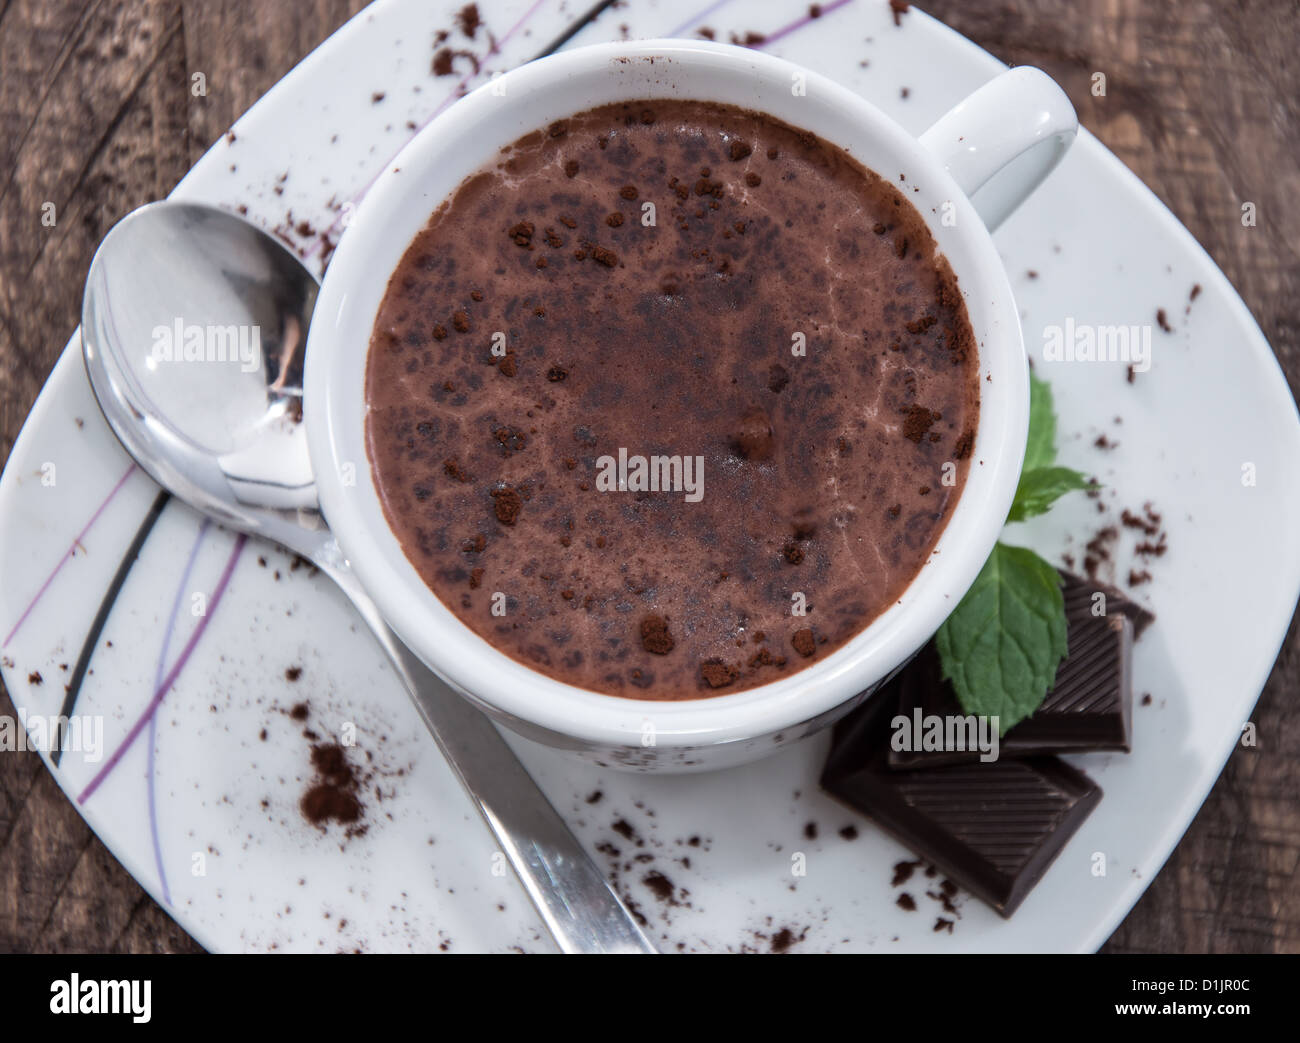 La tazza con il cioccolato caldo, pezzi di cioccolato e menta Foto Stock